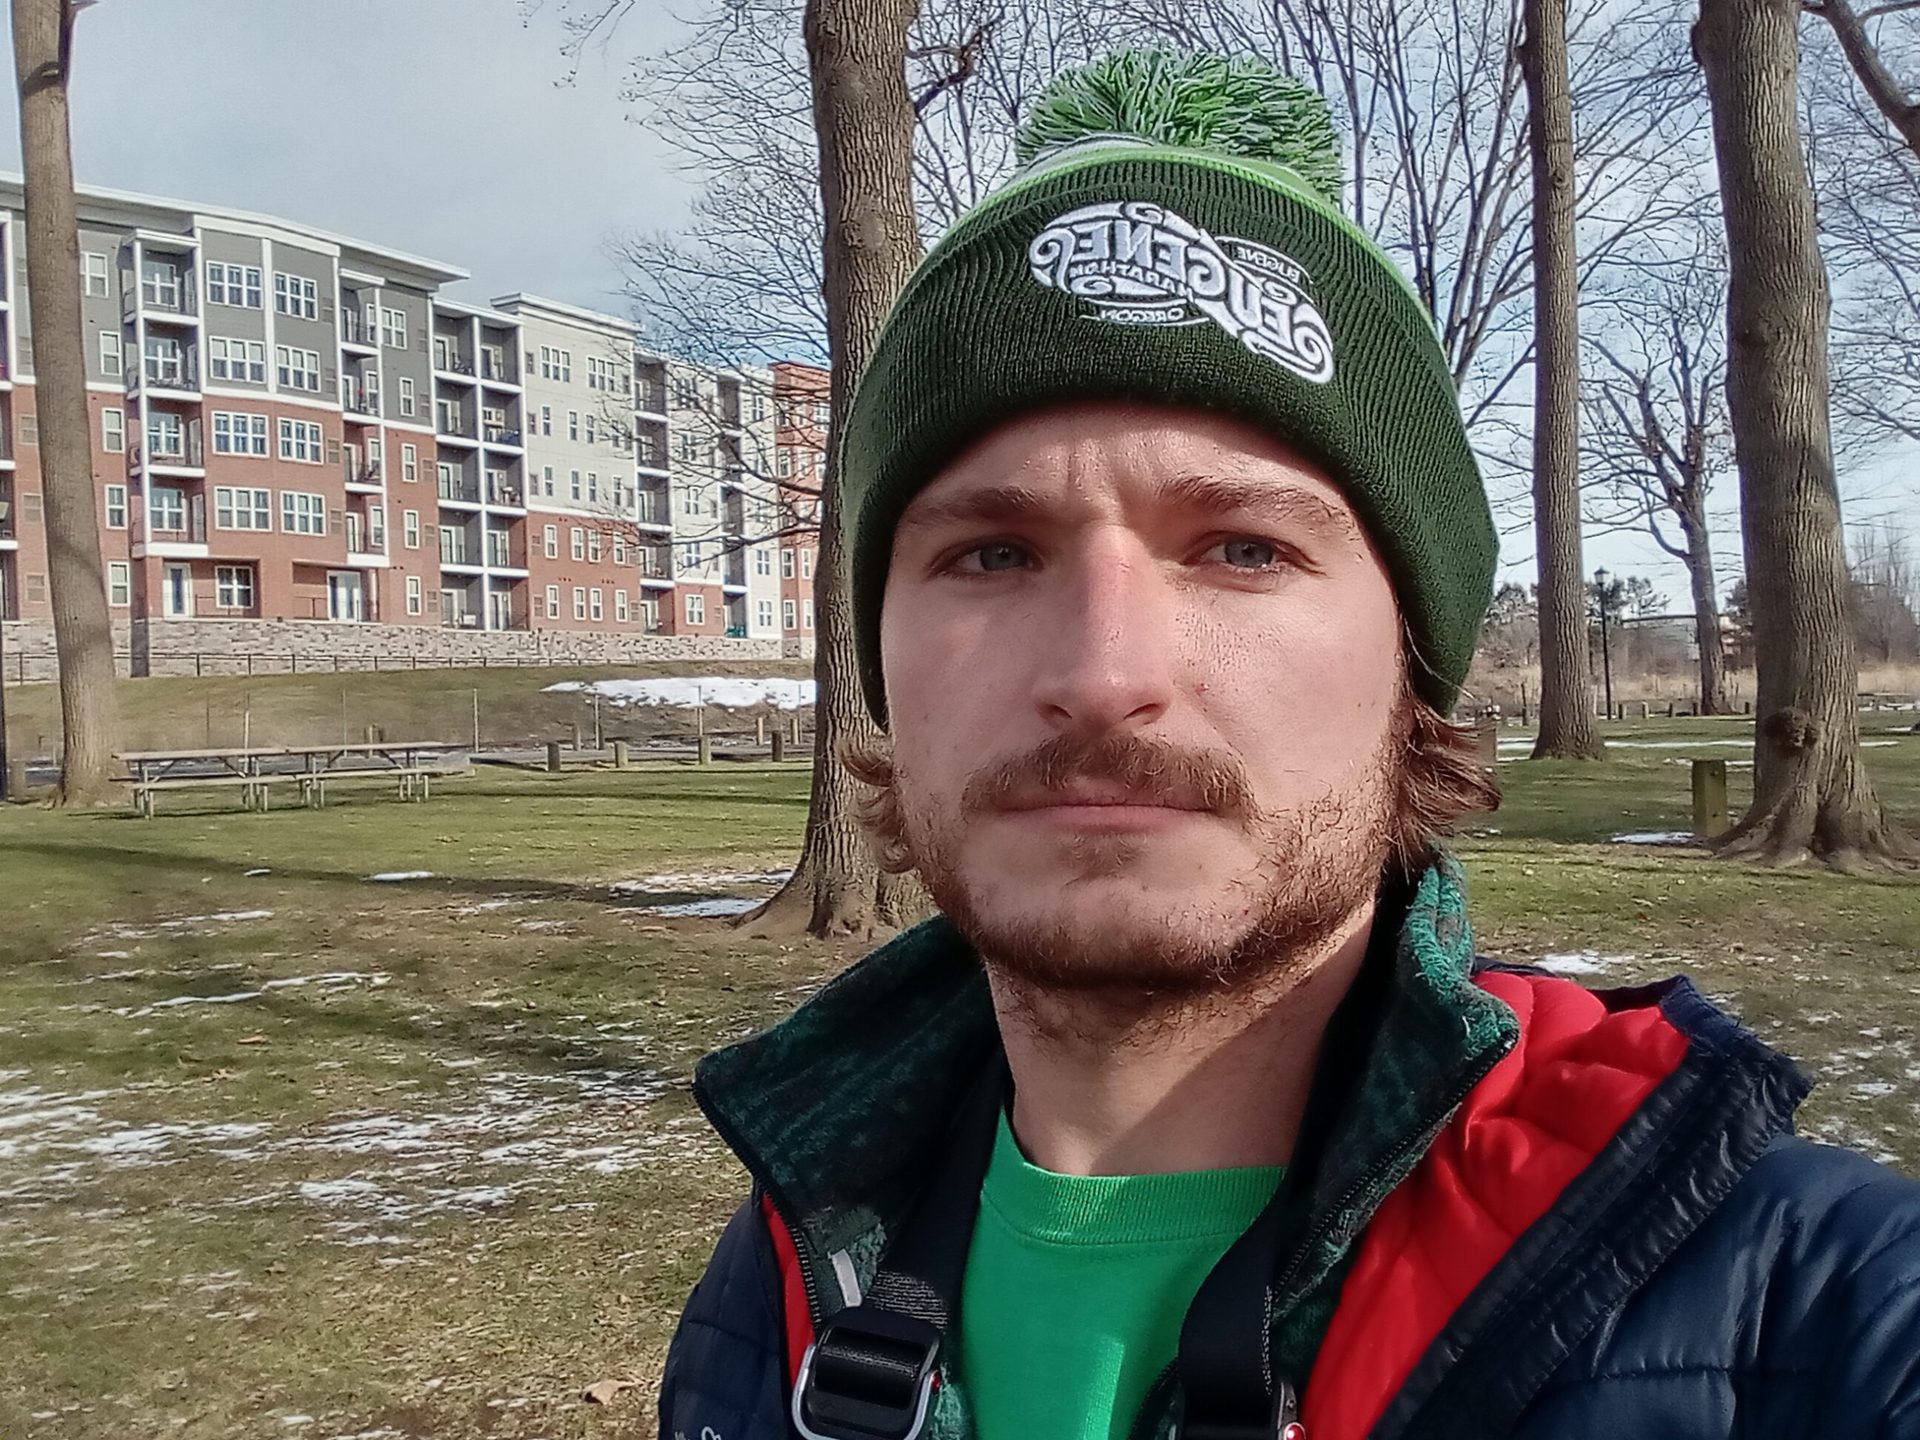 galaxie a03s selfie standard à l'extérieur d'un homme avec des poils sur le visage portant un chapeau vert, un t-shirt vert et un manteau rouge et noir, avec des bâtiments et des arbres visibles derrière lui.